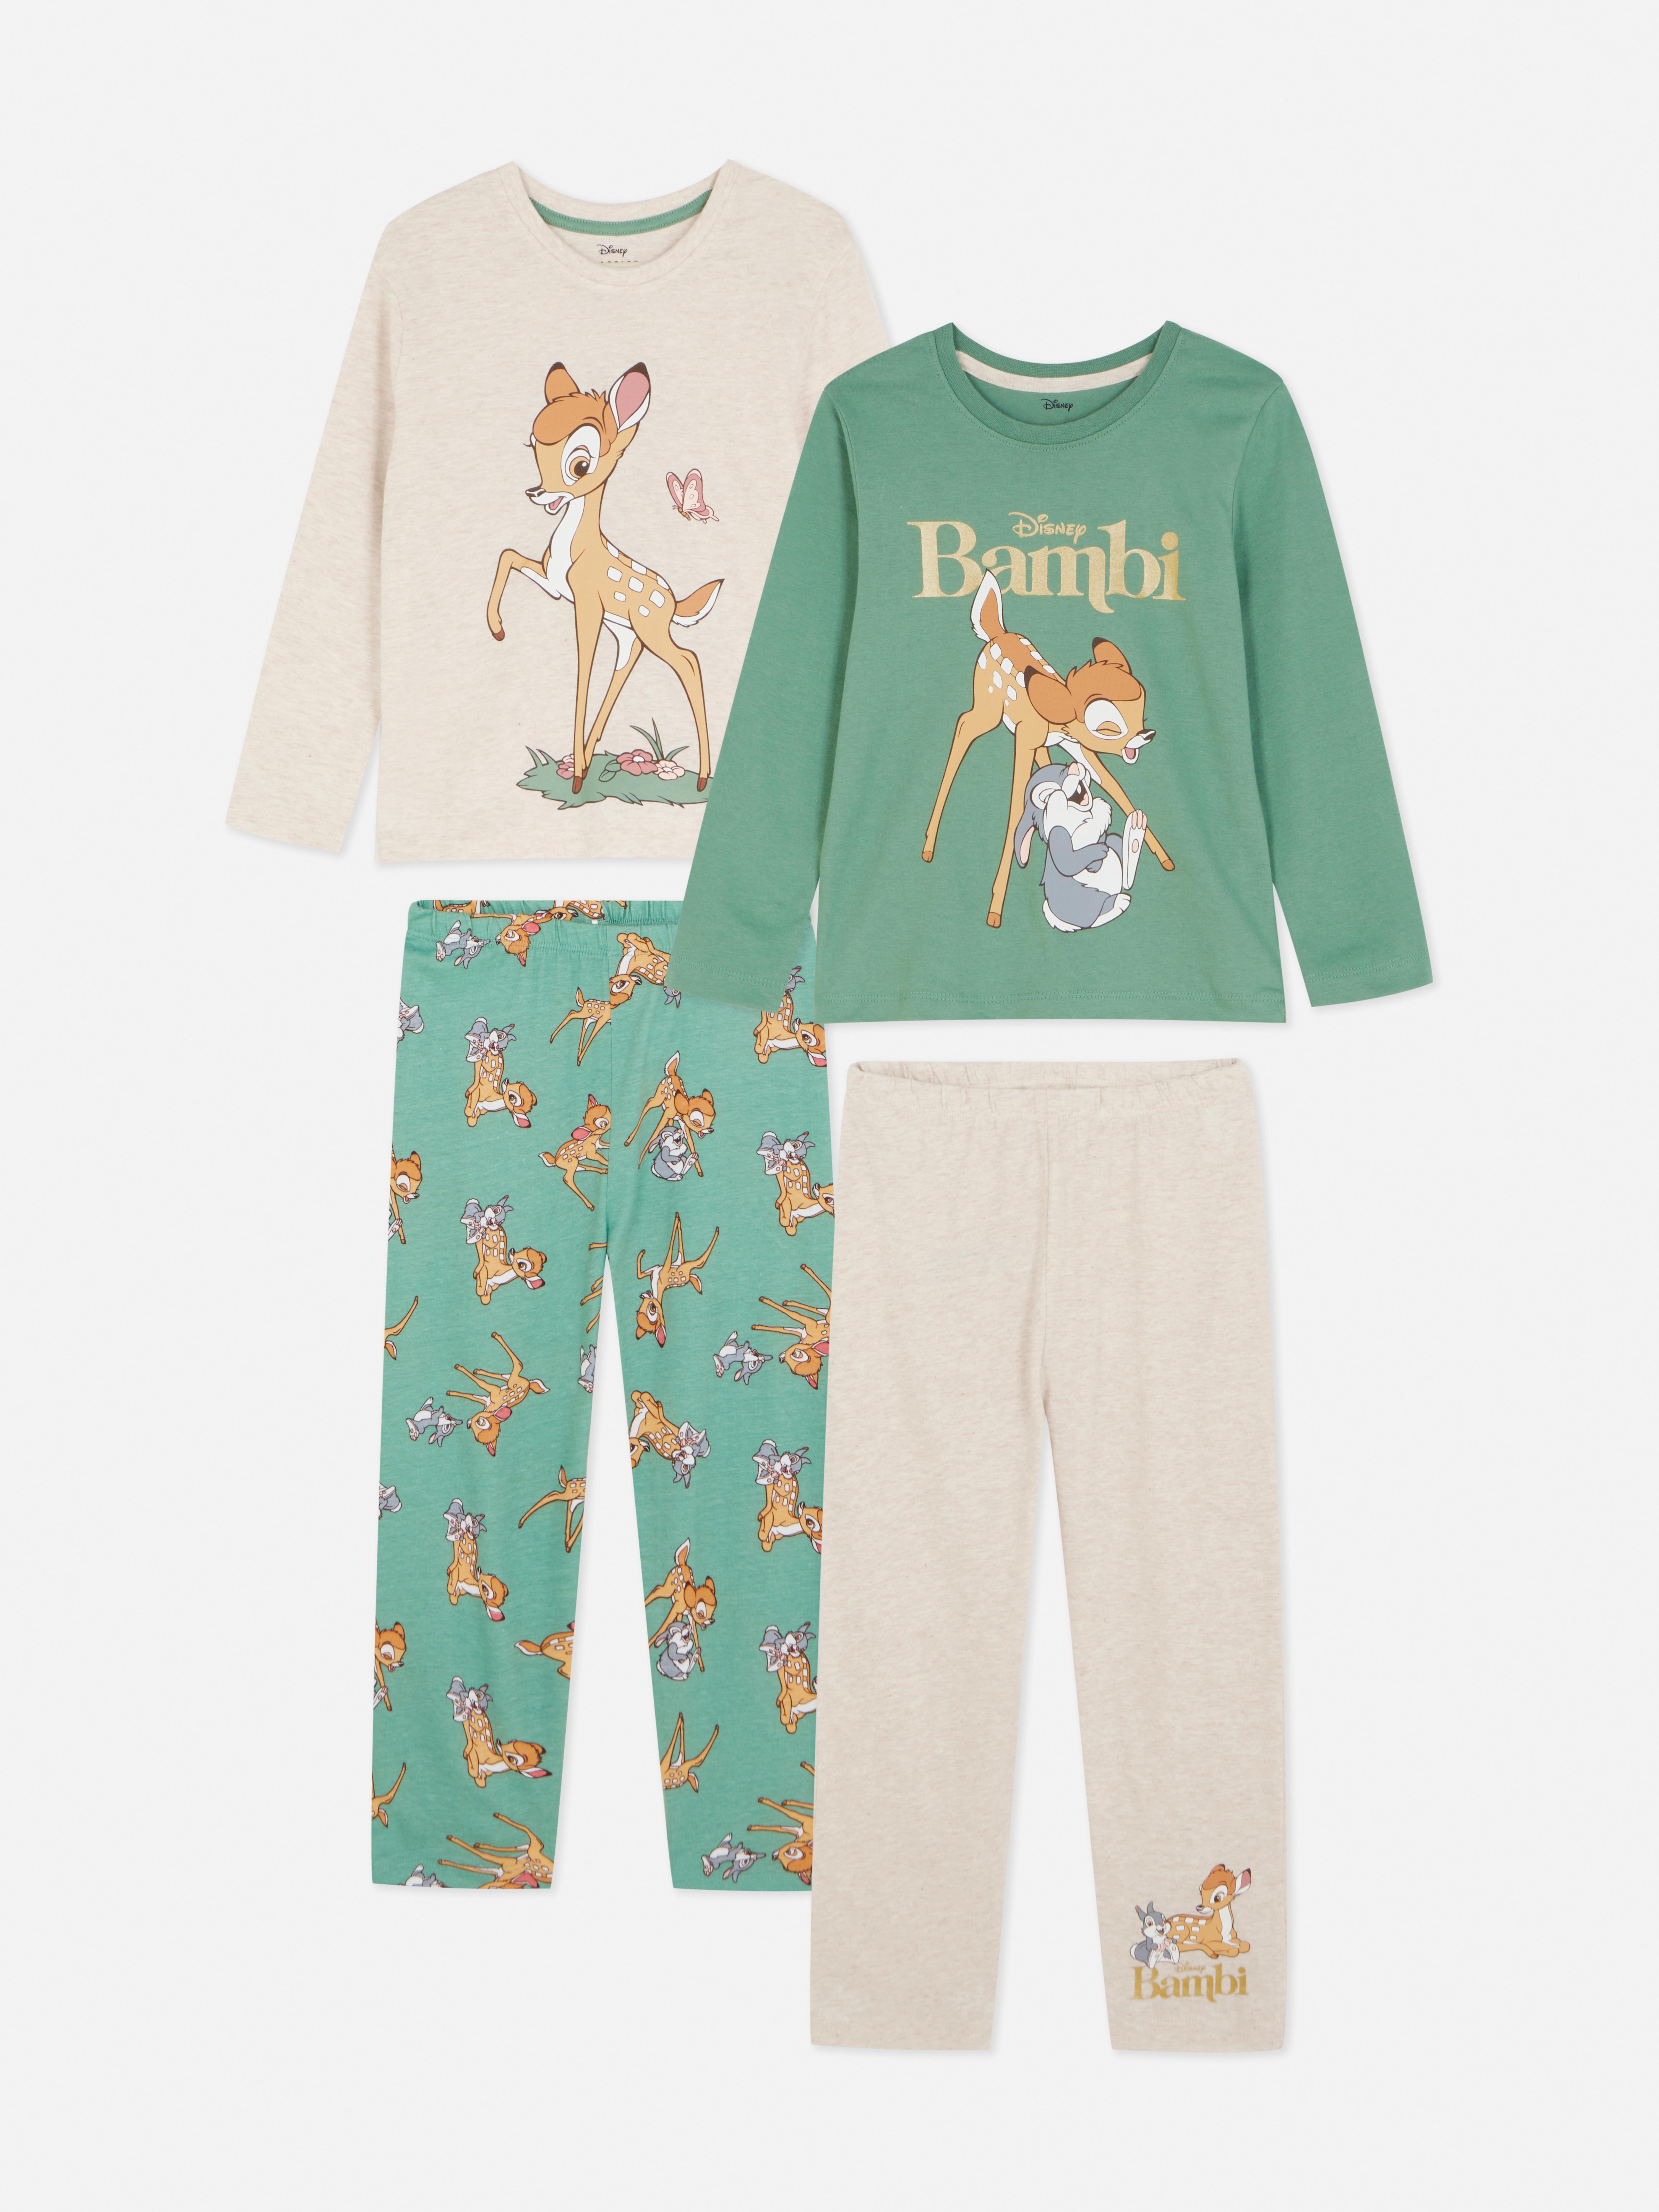 2 pigiami Bambi Disney